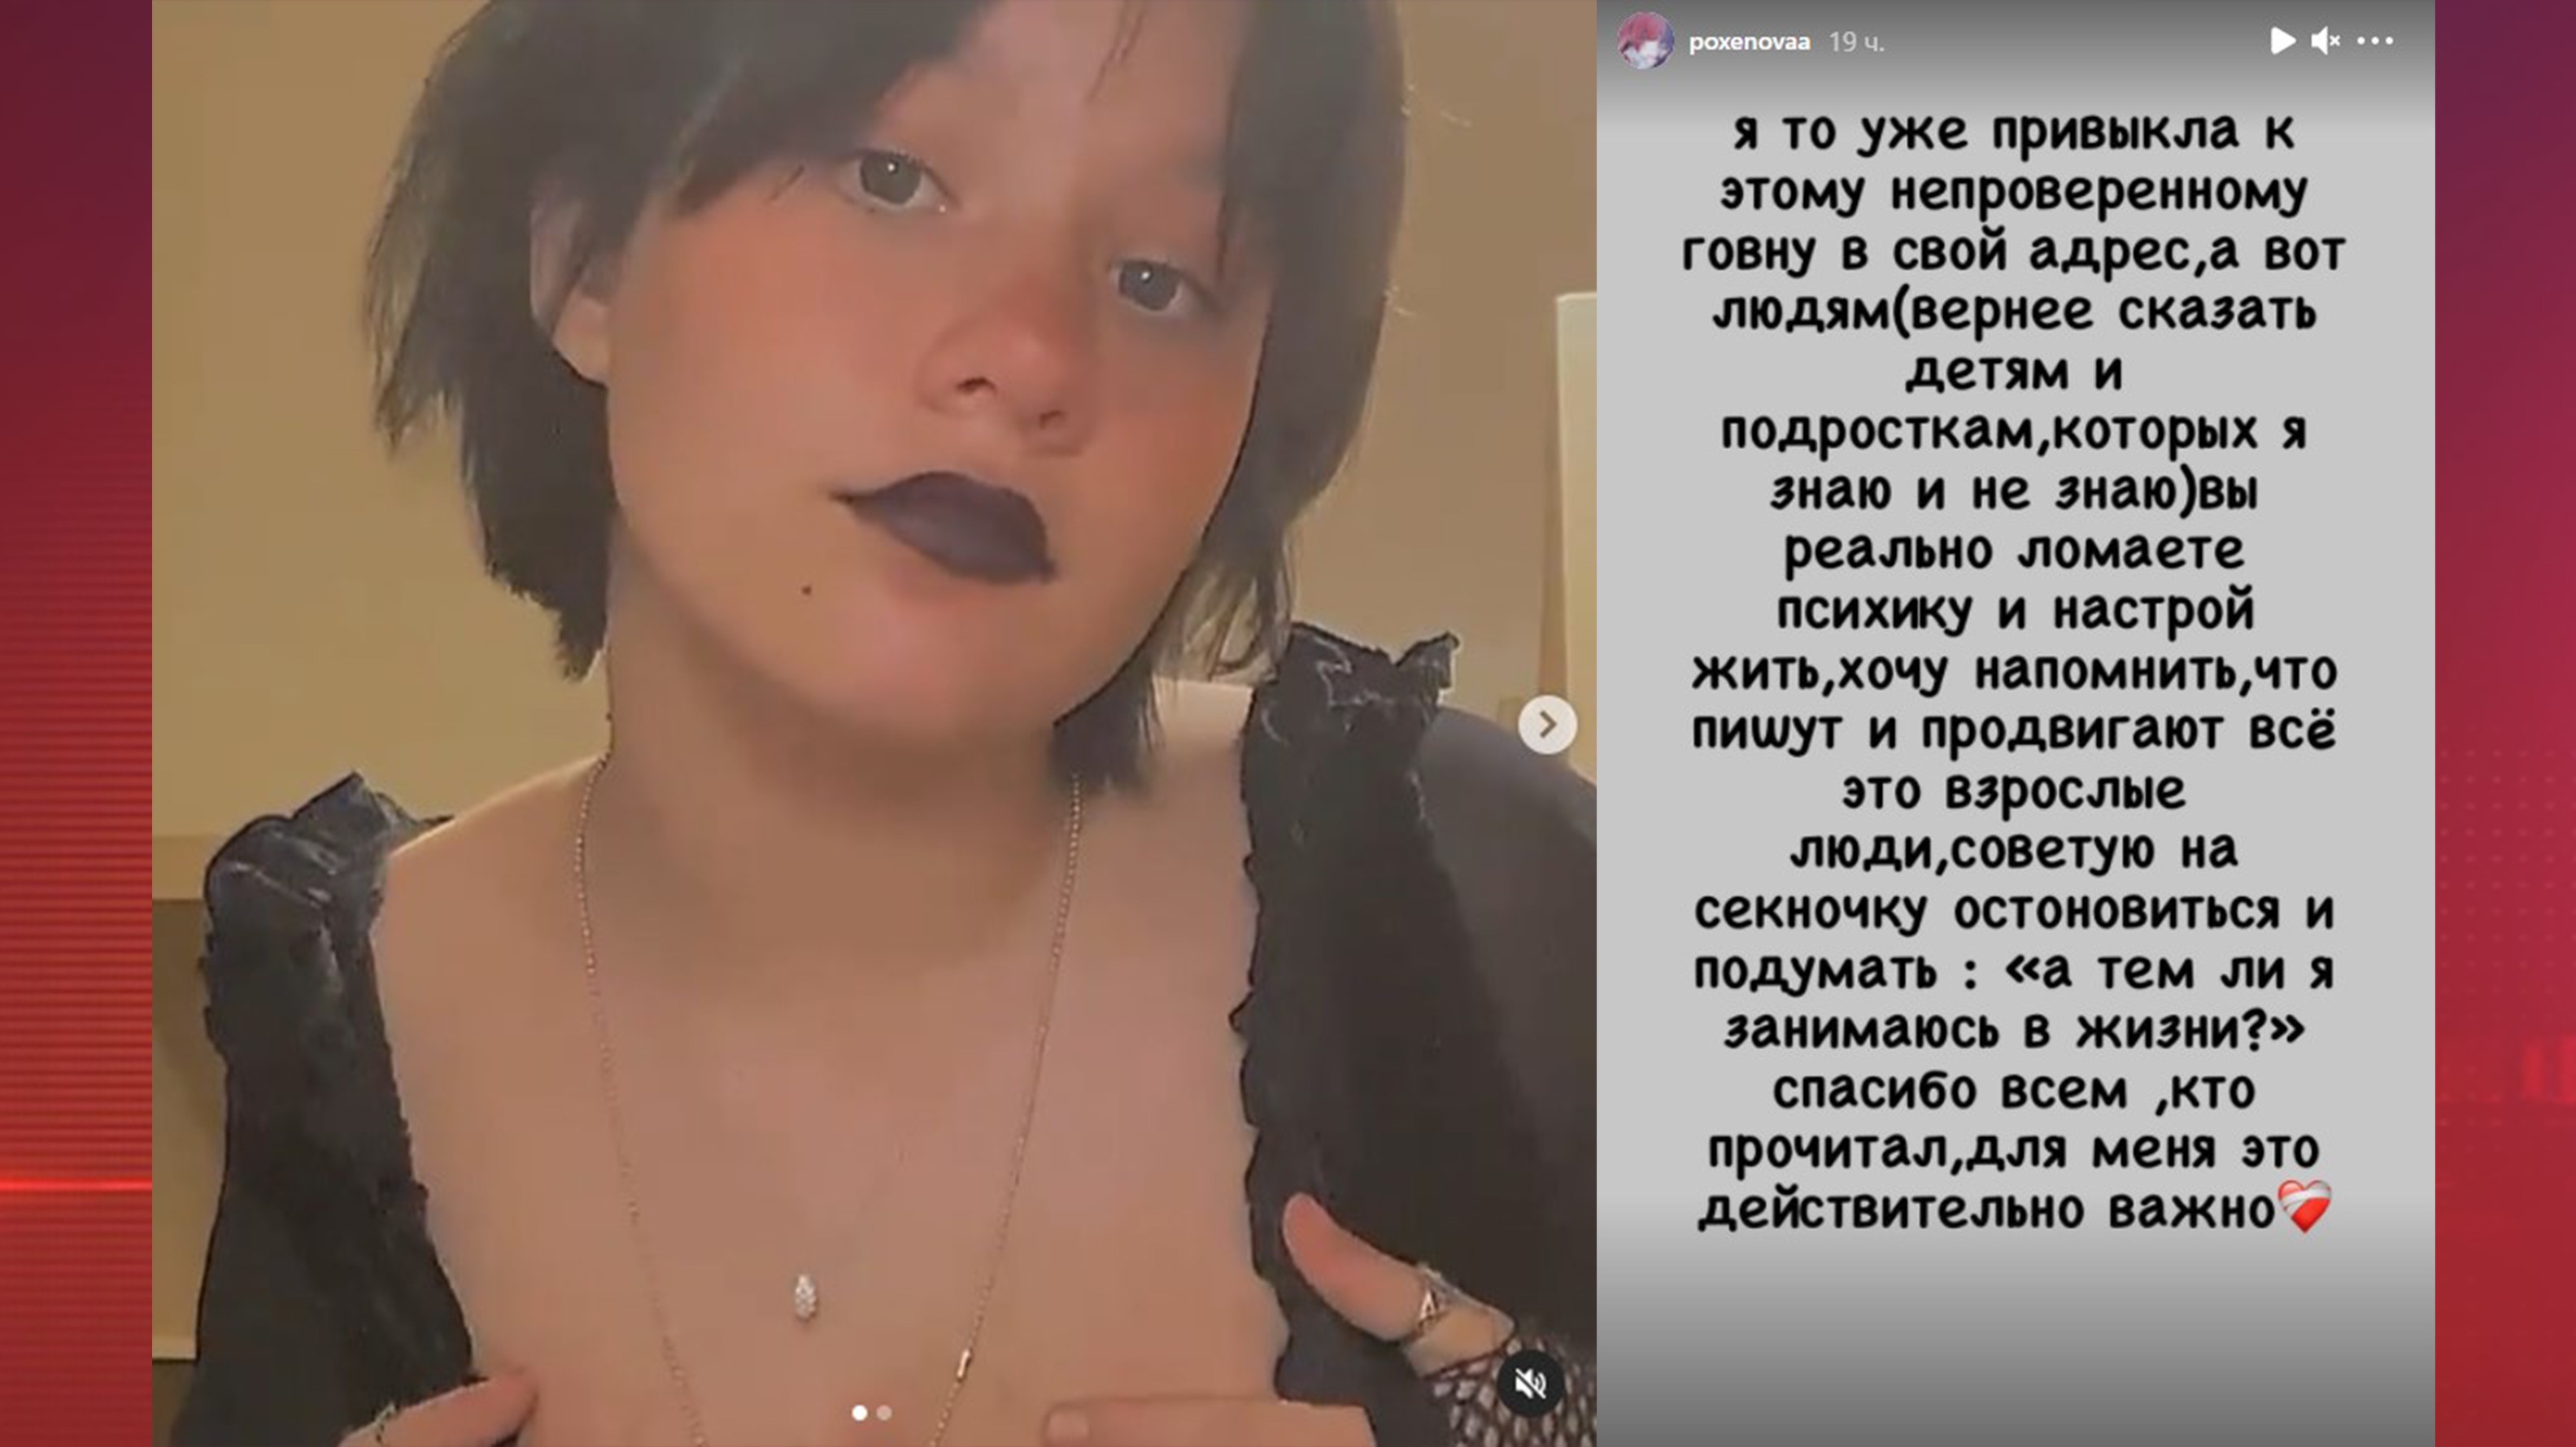 Дочь Борисовой поругалась со СМИ из-за видео в образе гота: «Вы ломаете психику!